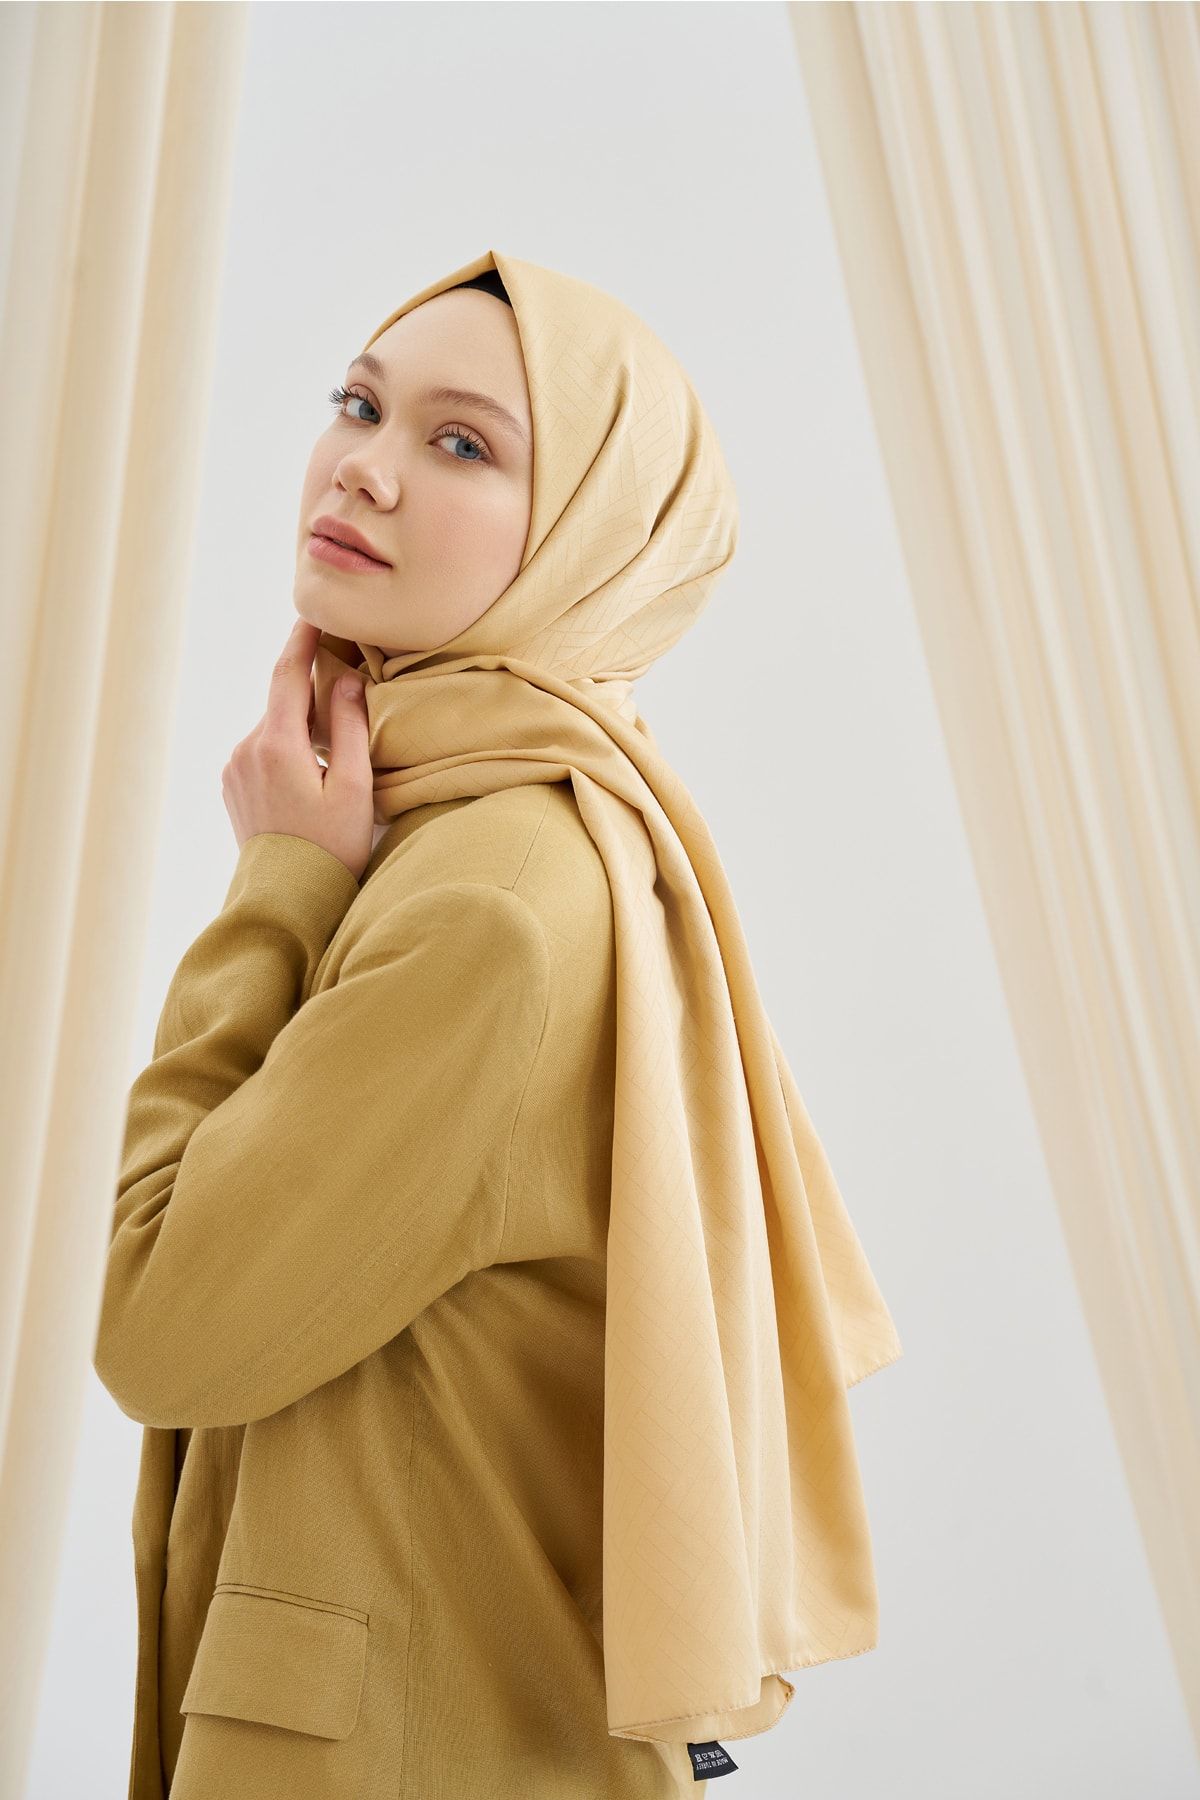 ARMANDA Yeni Sezon Grafik Desen Şal - Perla Serisi Minimal Desen Şık Şal Başörtü Hijab Scarf